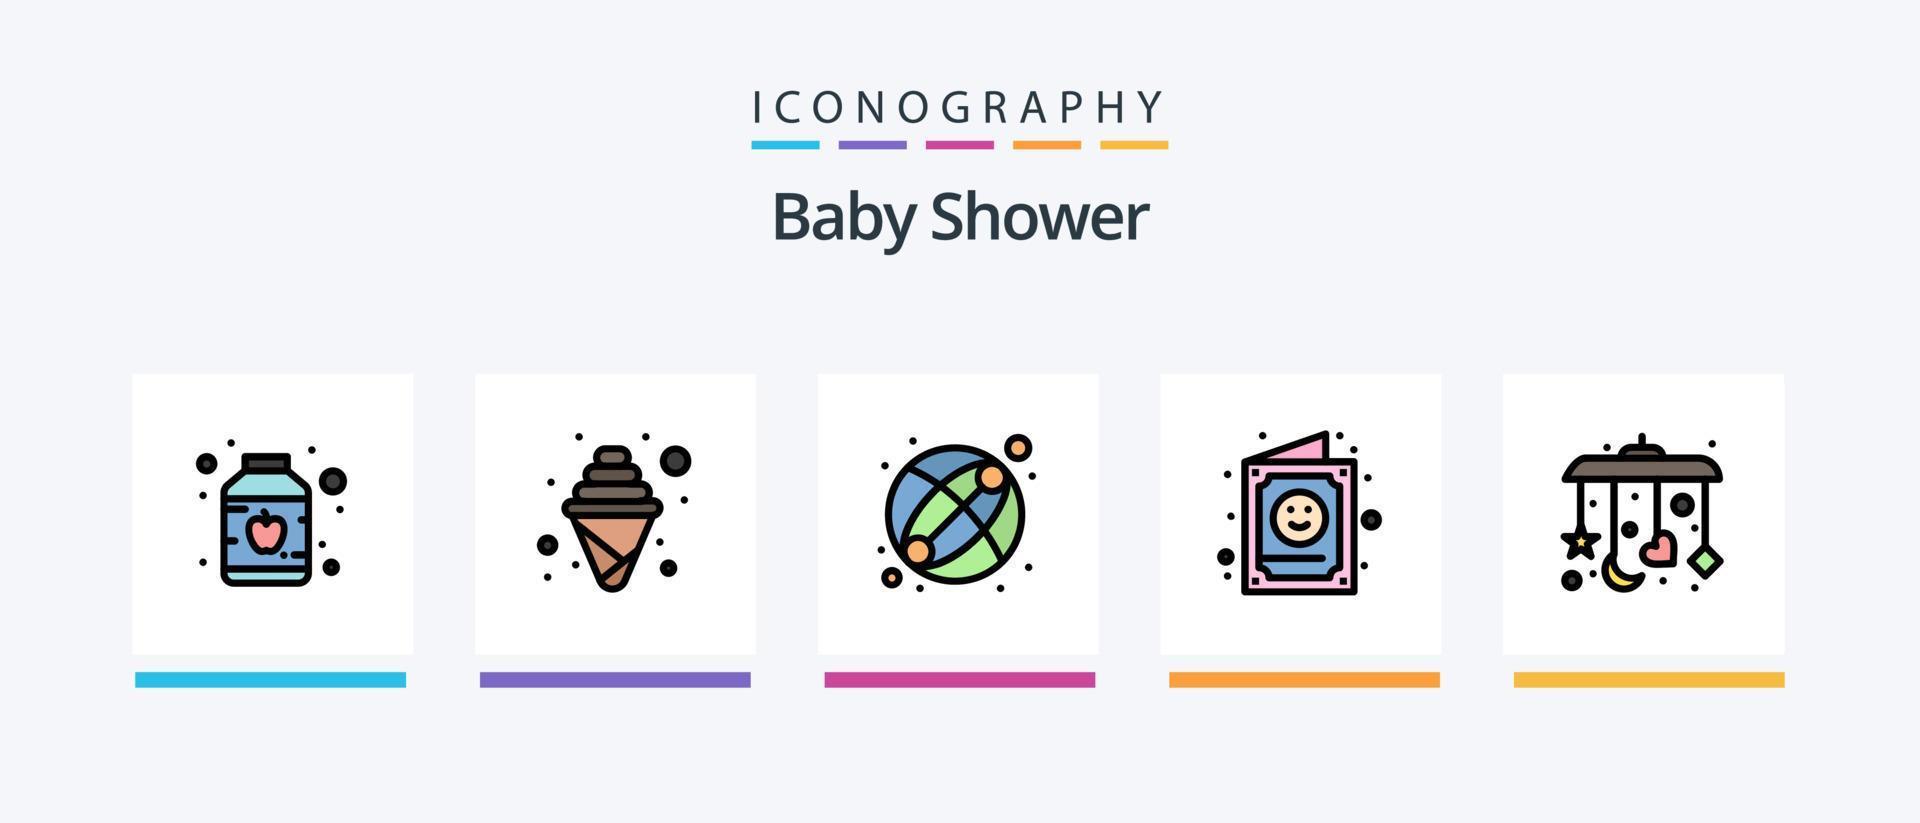 ligne de douche de bébé remplie de 5 packs d'icônes, y compris le bébé. enfant. bouteille de lotion. culotte bébé. grossesse. conception d'icônes créatives vecteur